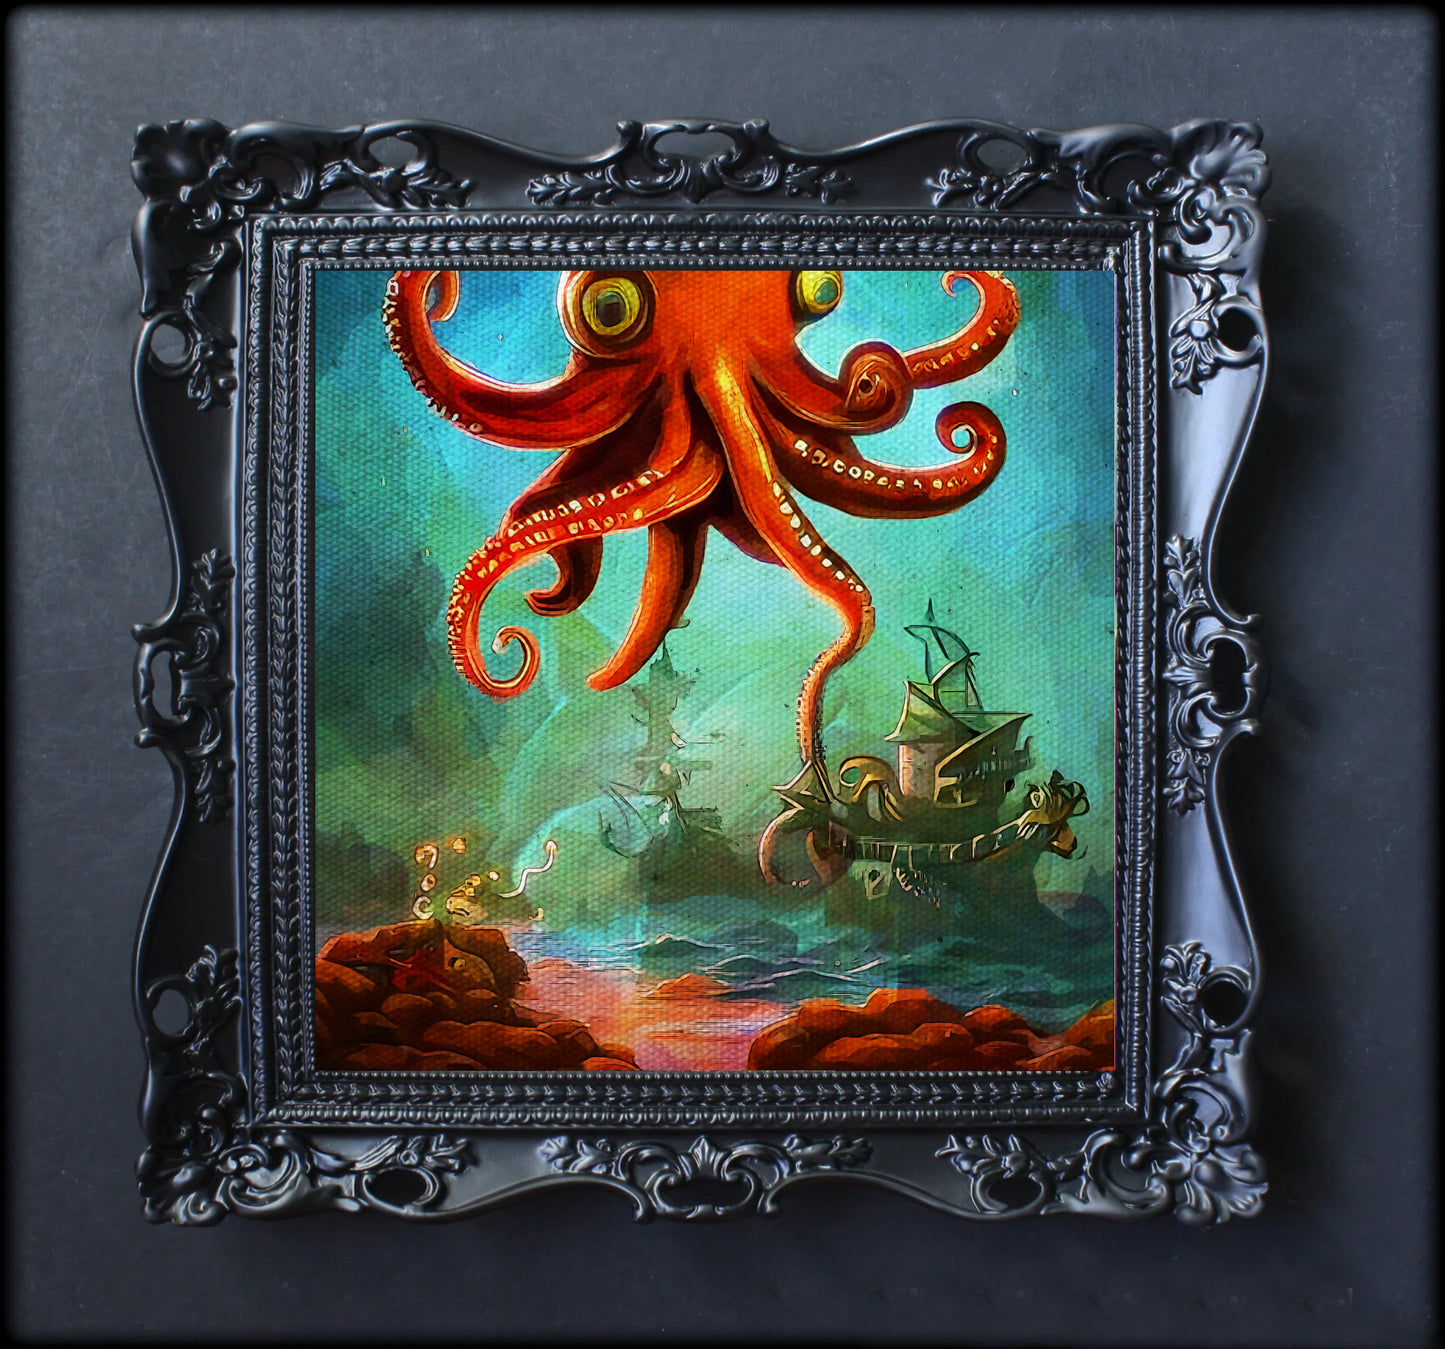 Kraken and pirate ship painting